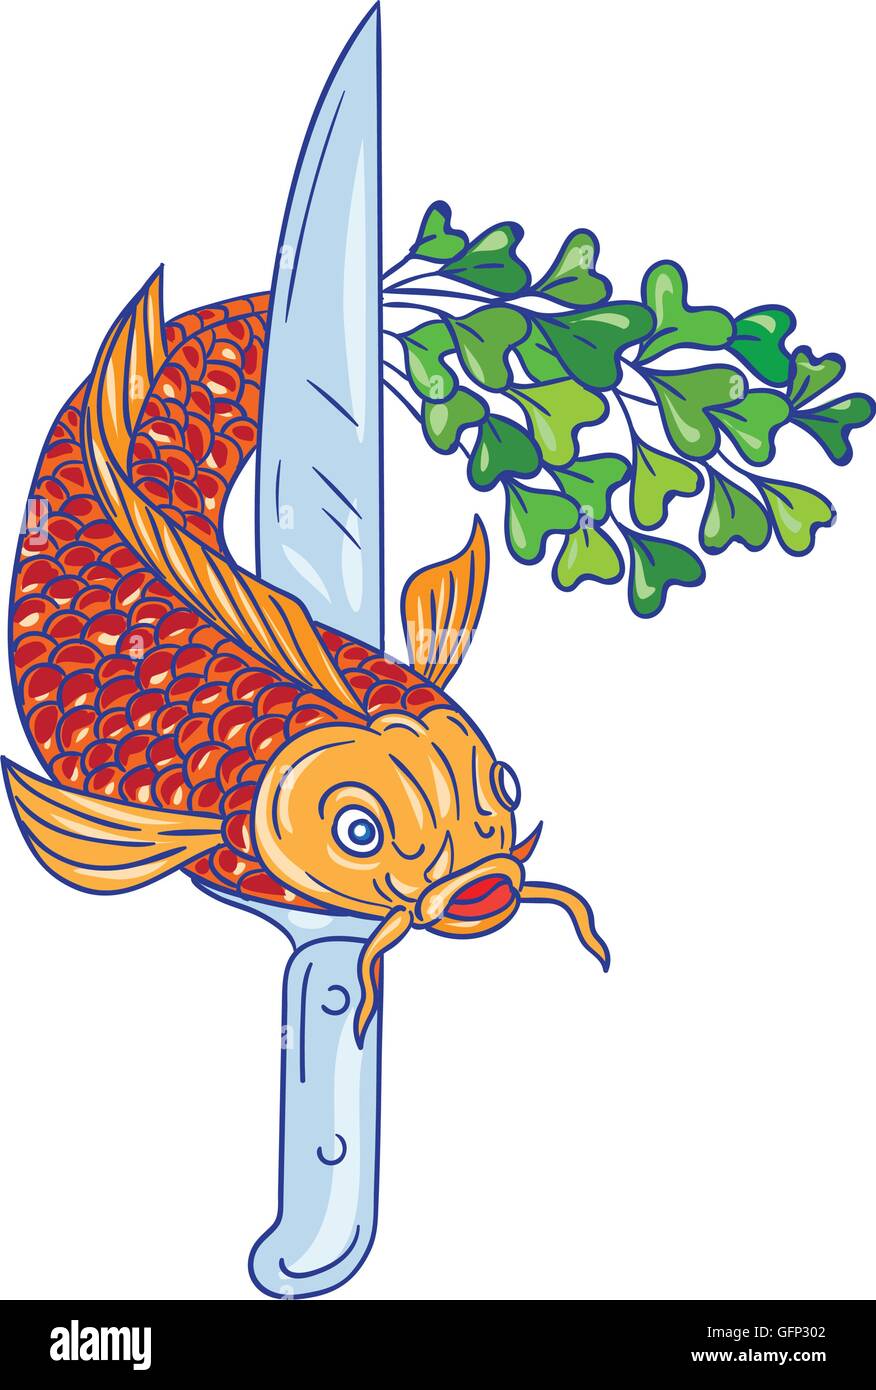 Croquis dessin illustration de style d'un couteau et d'une truite poisson avec microgreen queue vue de l'avant ensemble isolées sur fond blanc. Illustration de Vecteur